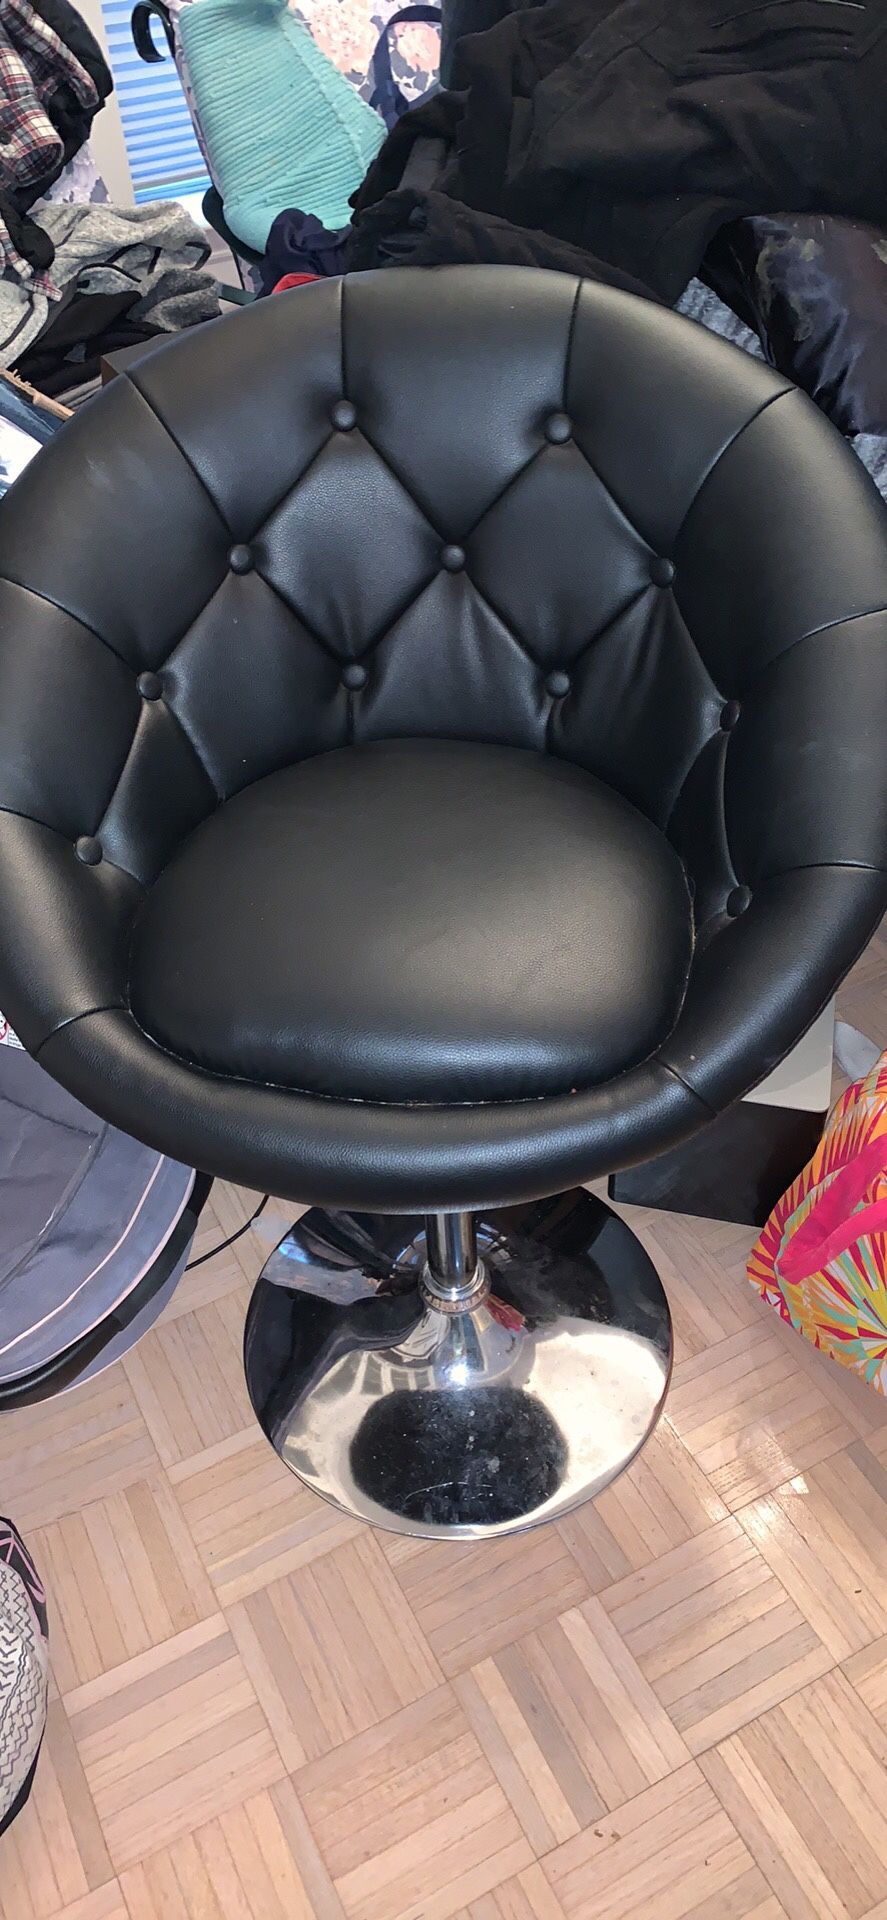 Makeup vanity chair